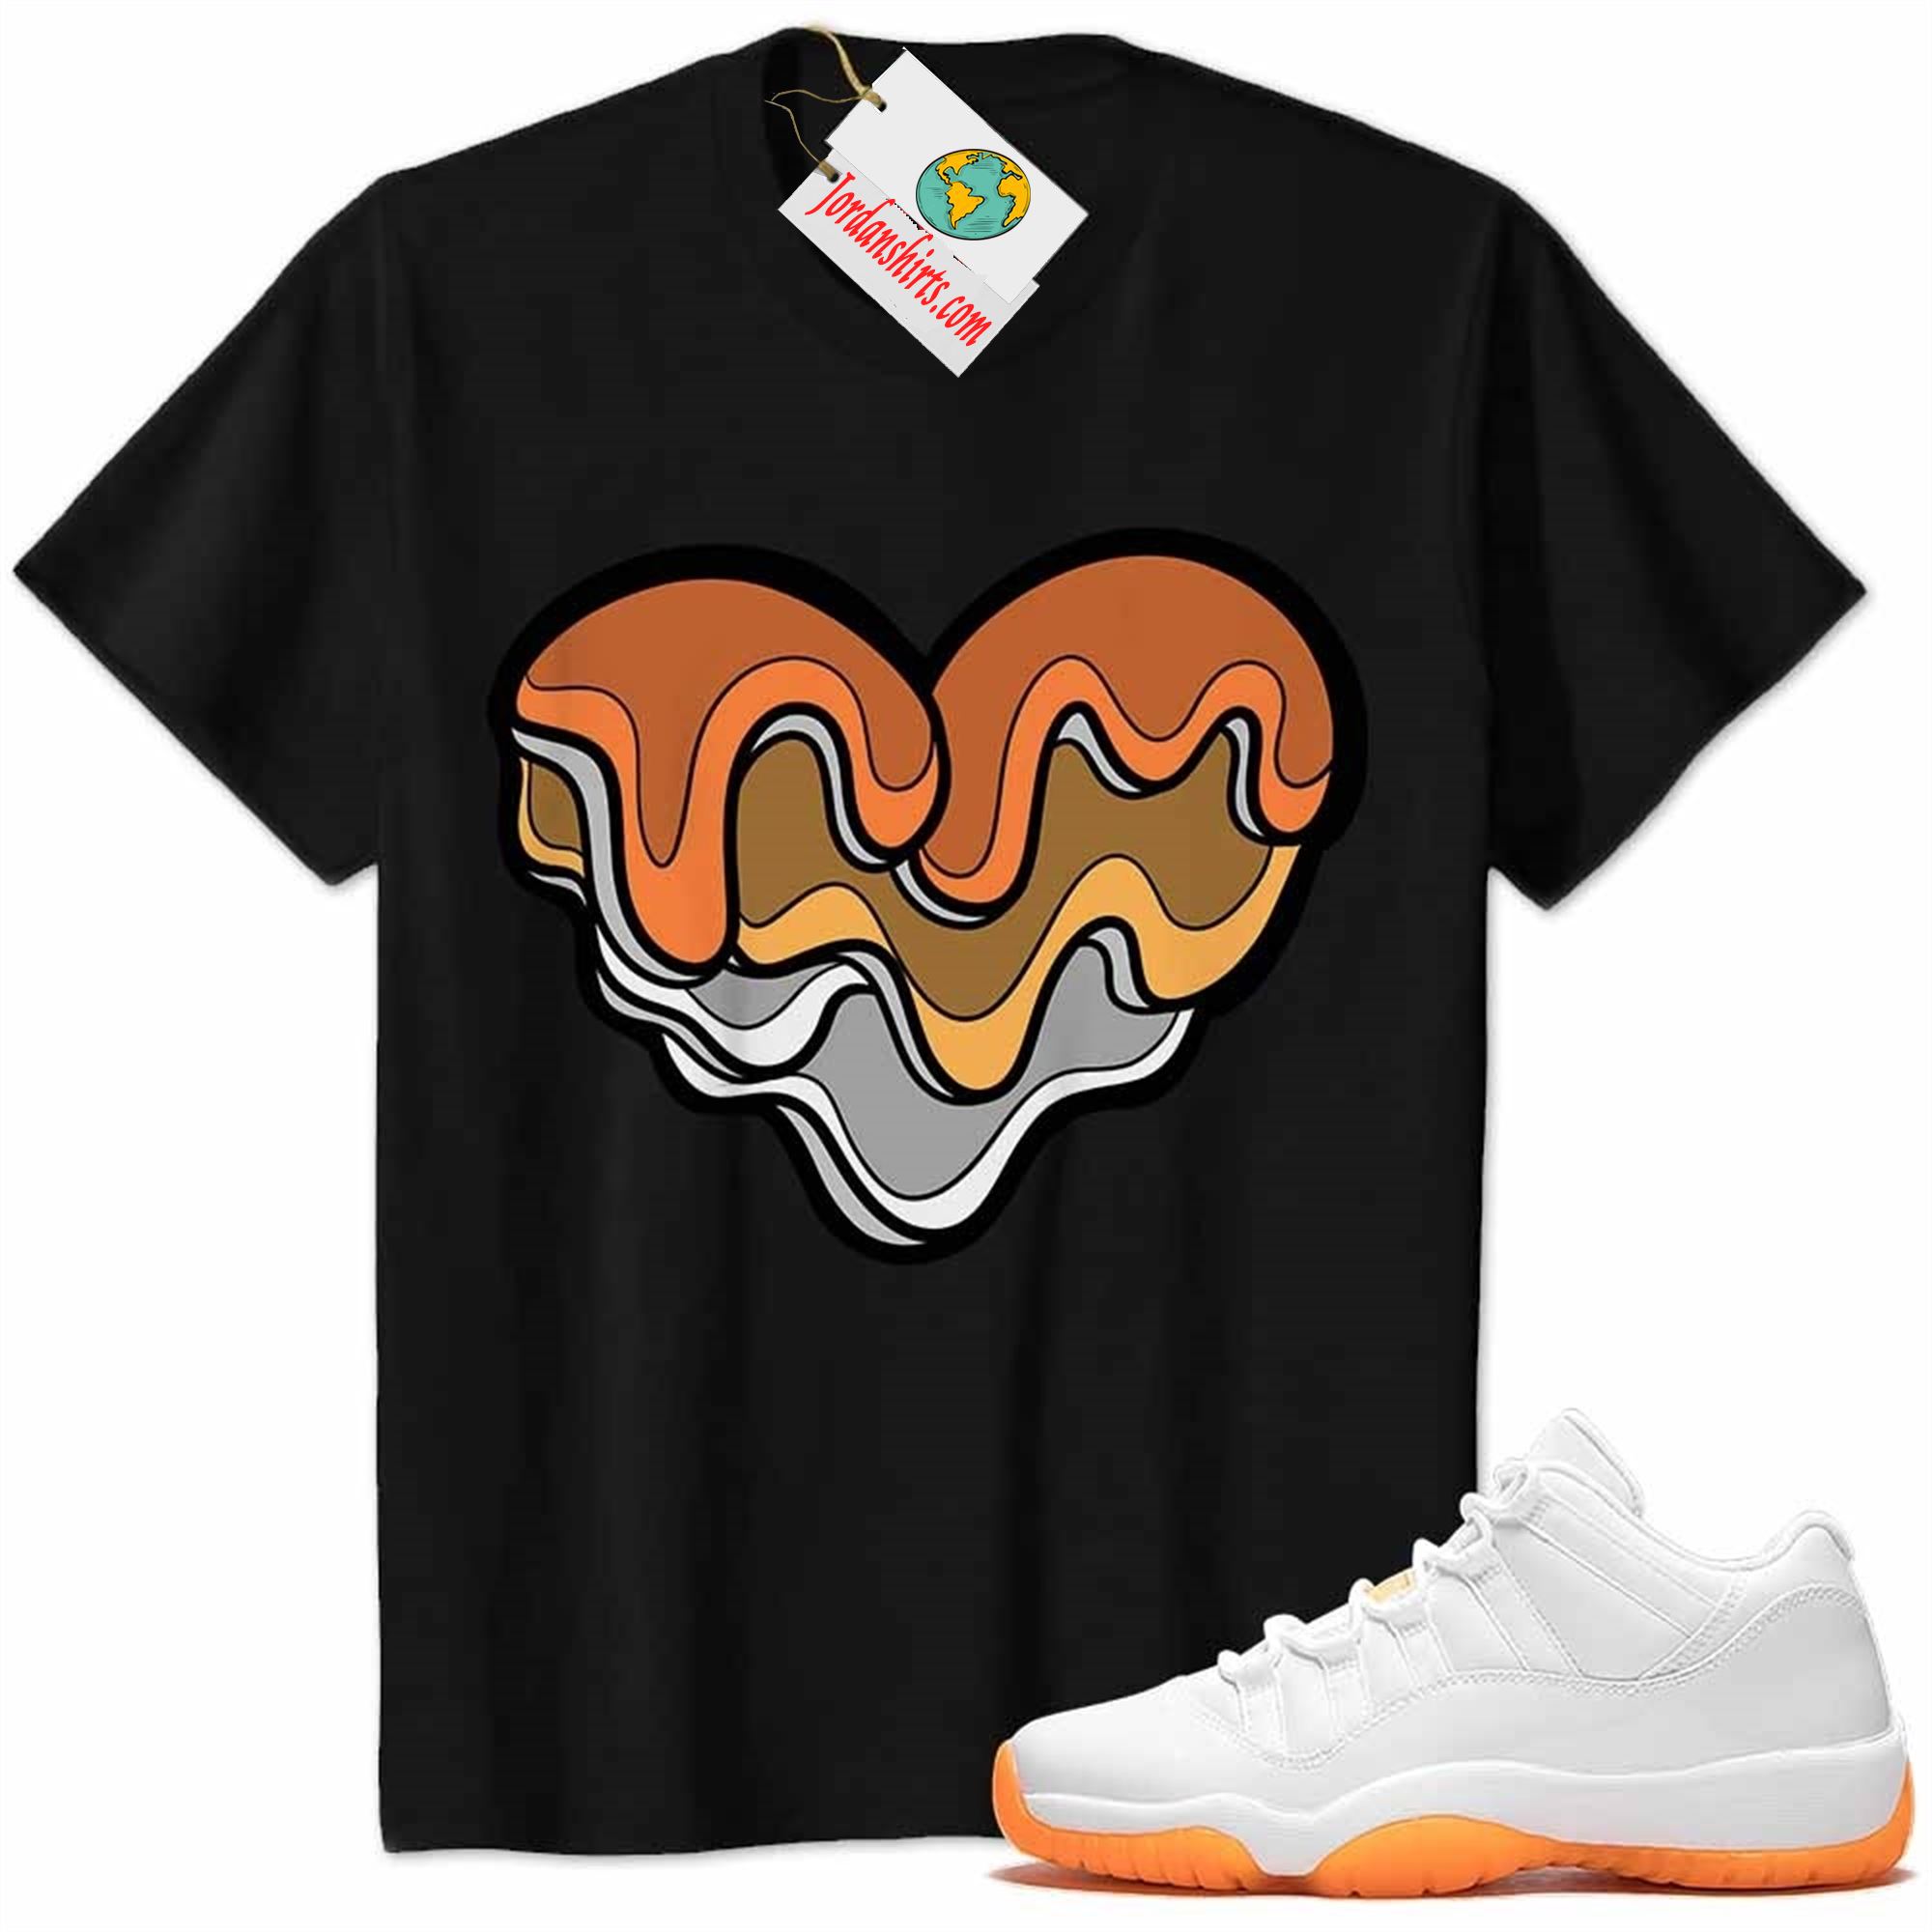 Jordan 11 Shirt, Melt Dripping Heart Black Air Jordan 11 Citrus 11s Size Up To 5xl